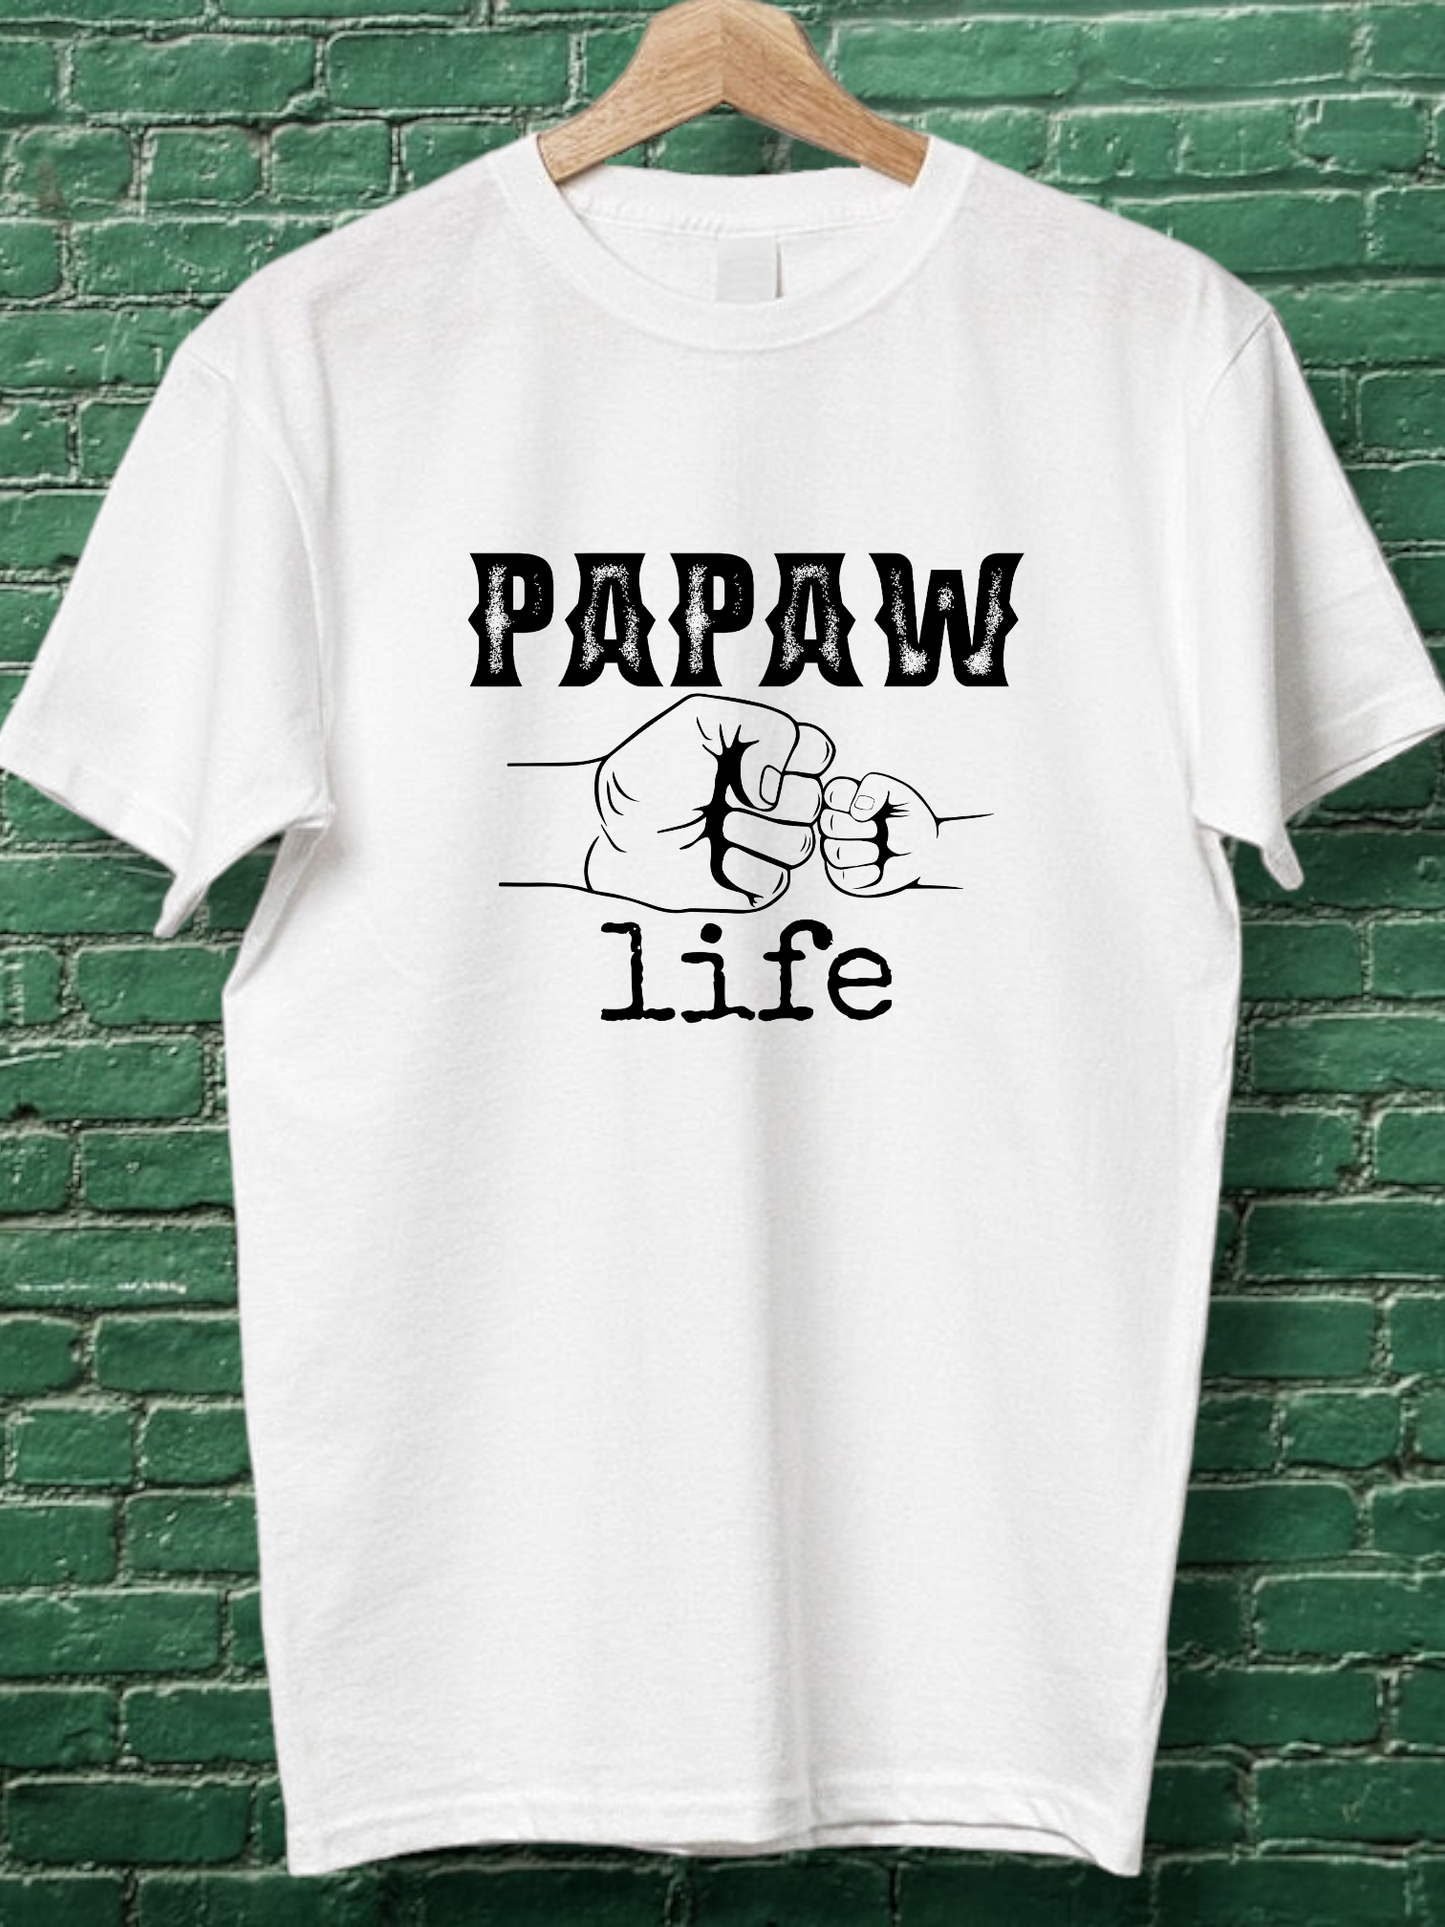 PAPAW LIFE